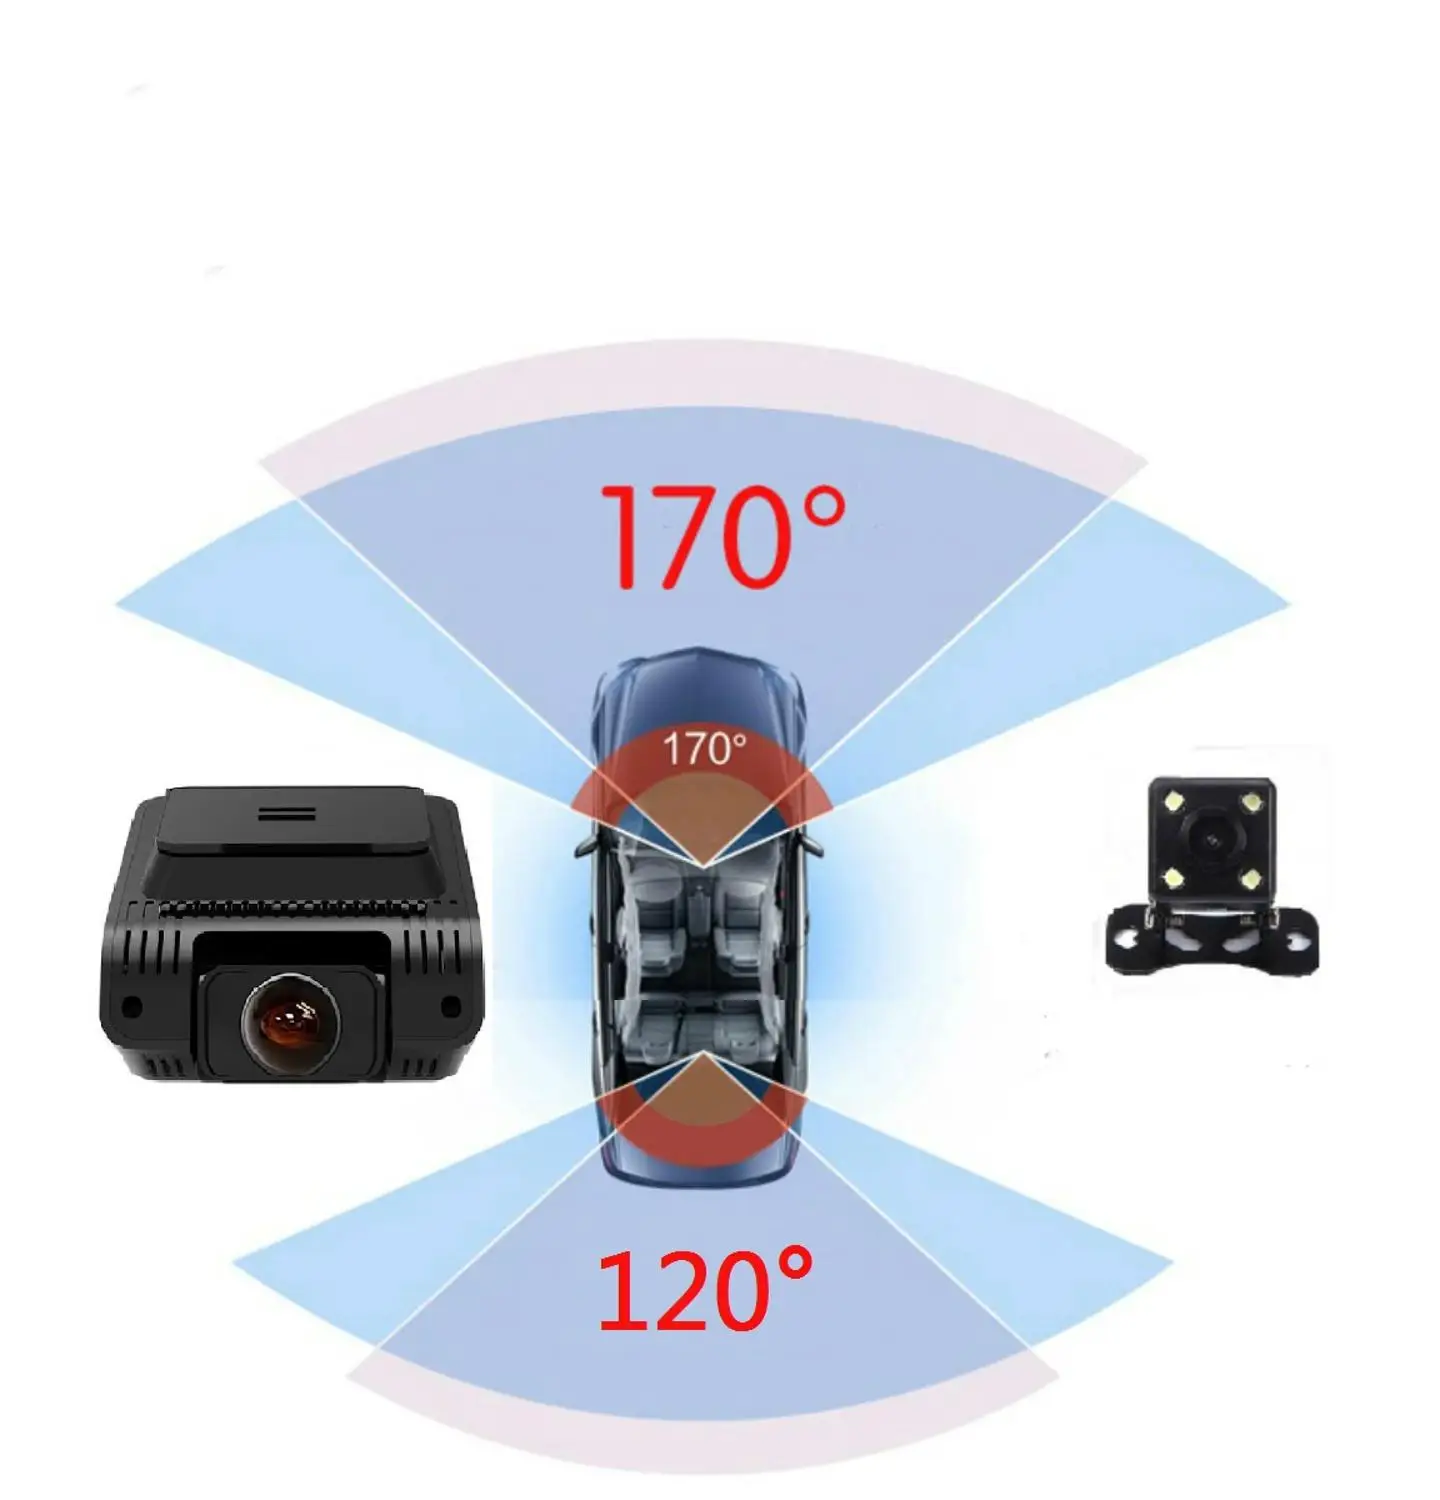 Скрытая мини видеорегистратор FULL HD1080P регистратор Автомобильная камера 2,4 экран Автомобильный видеорегистратор камера с двумя объективами с заднего вида авто видеорегистратор